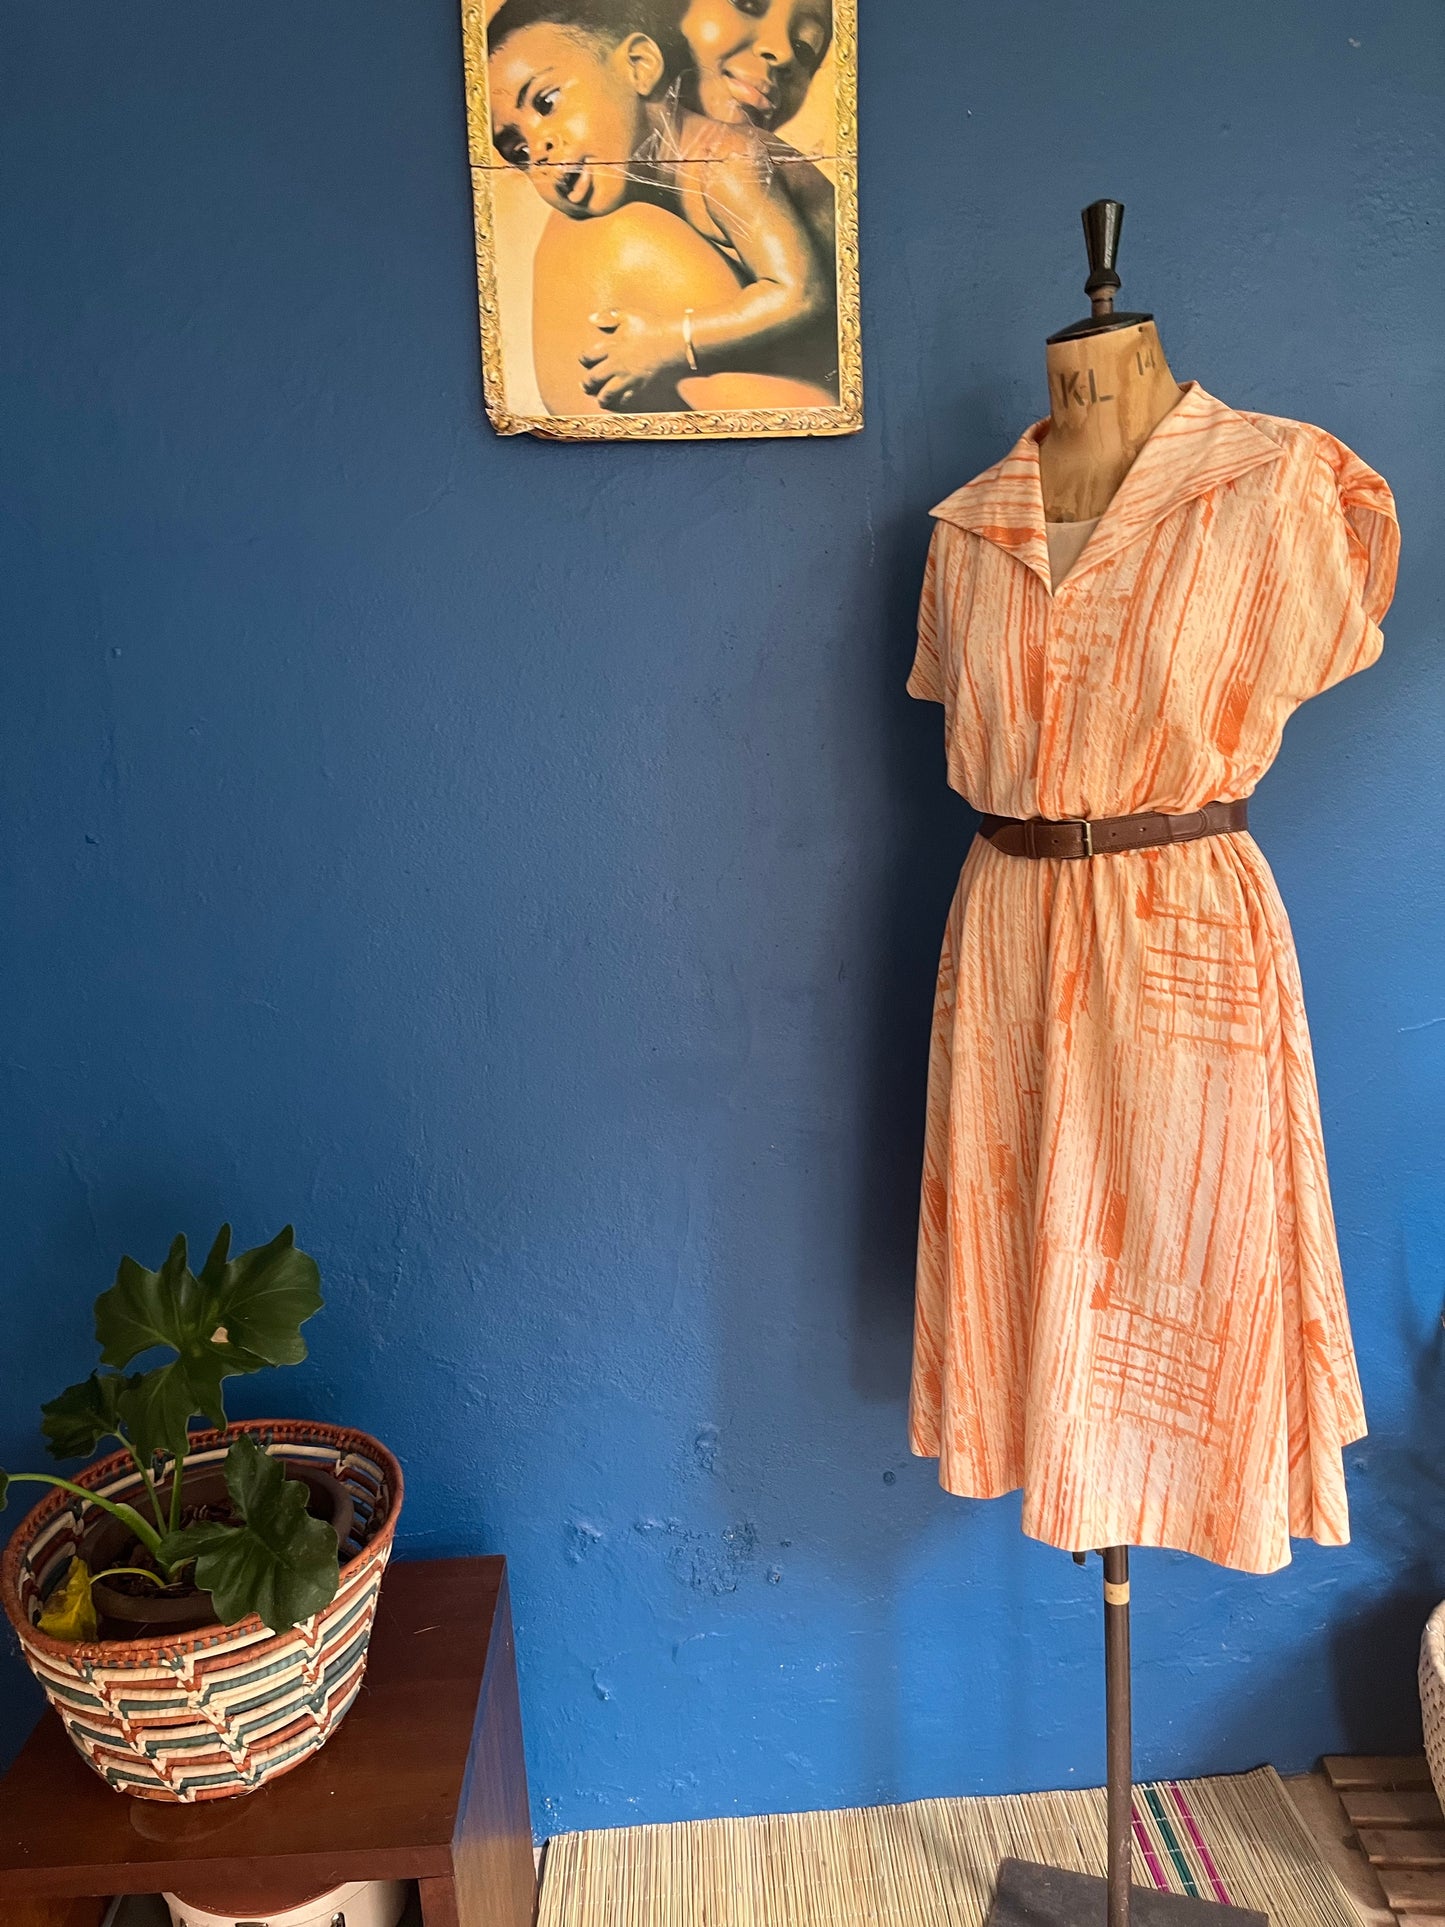 Orange Print Dress